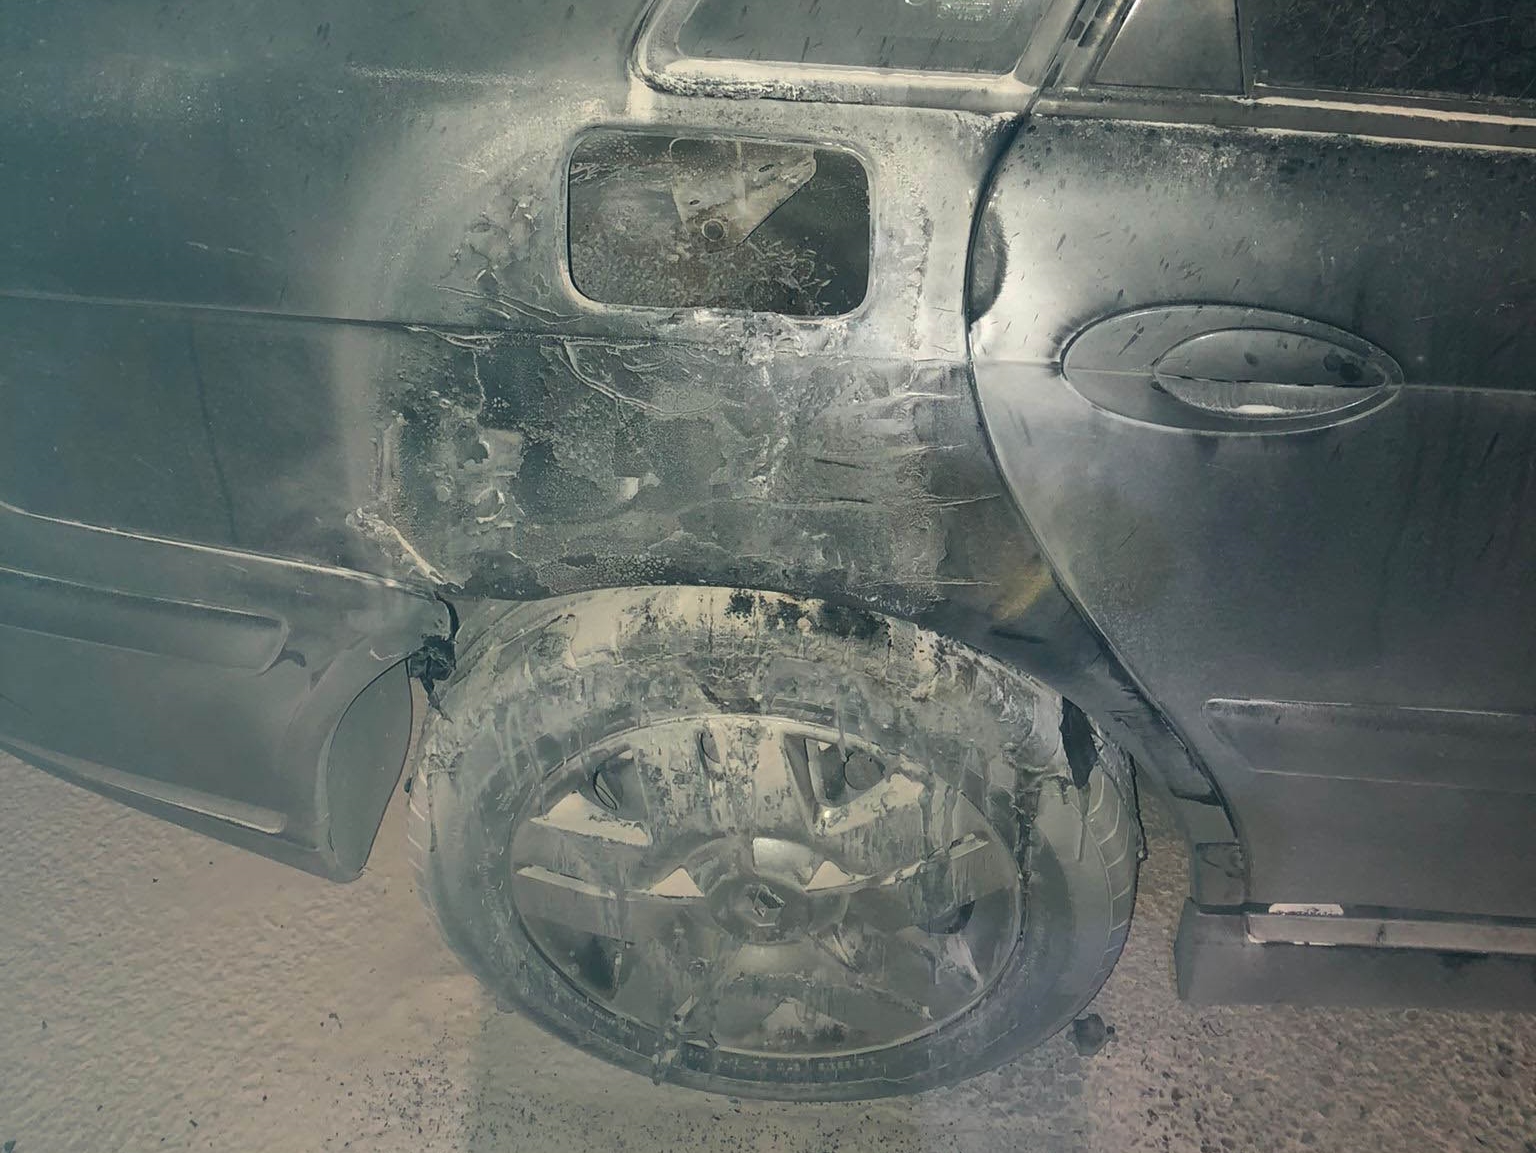 Uno de los vehículos quemados. Foto de la Guardia Civil.